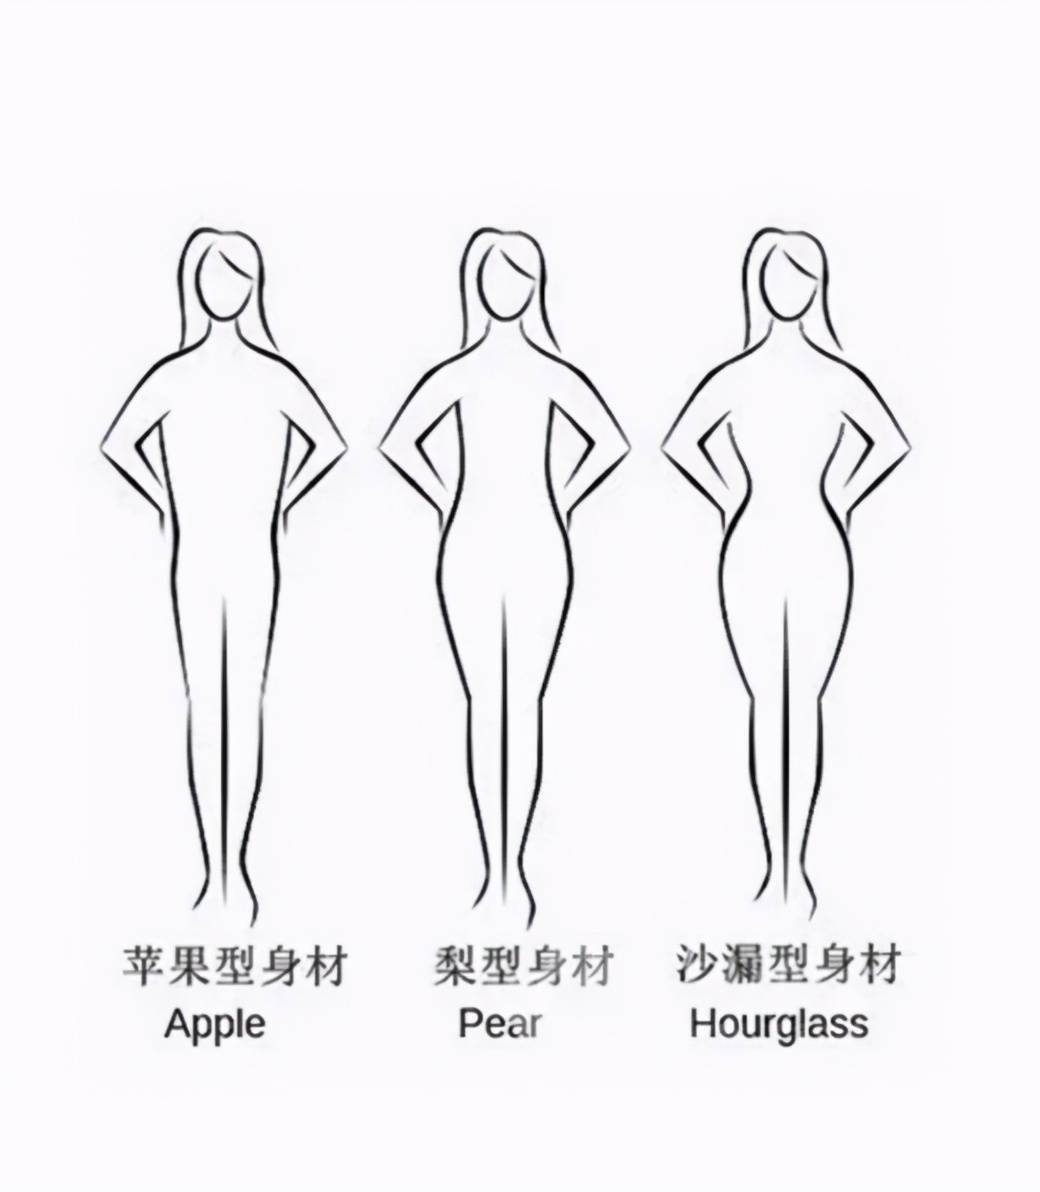 一般来说,针对亚洲女性,可以总结为这三种类型的身材 梨形身材沙漏